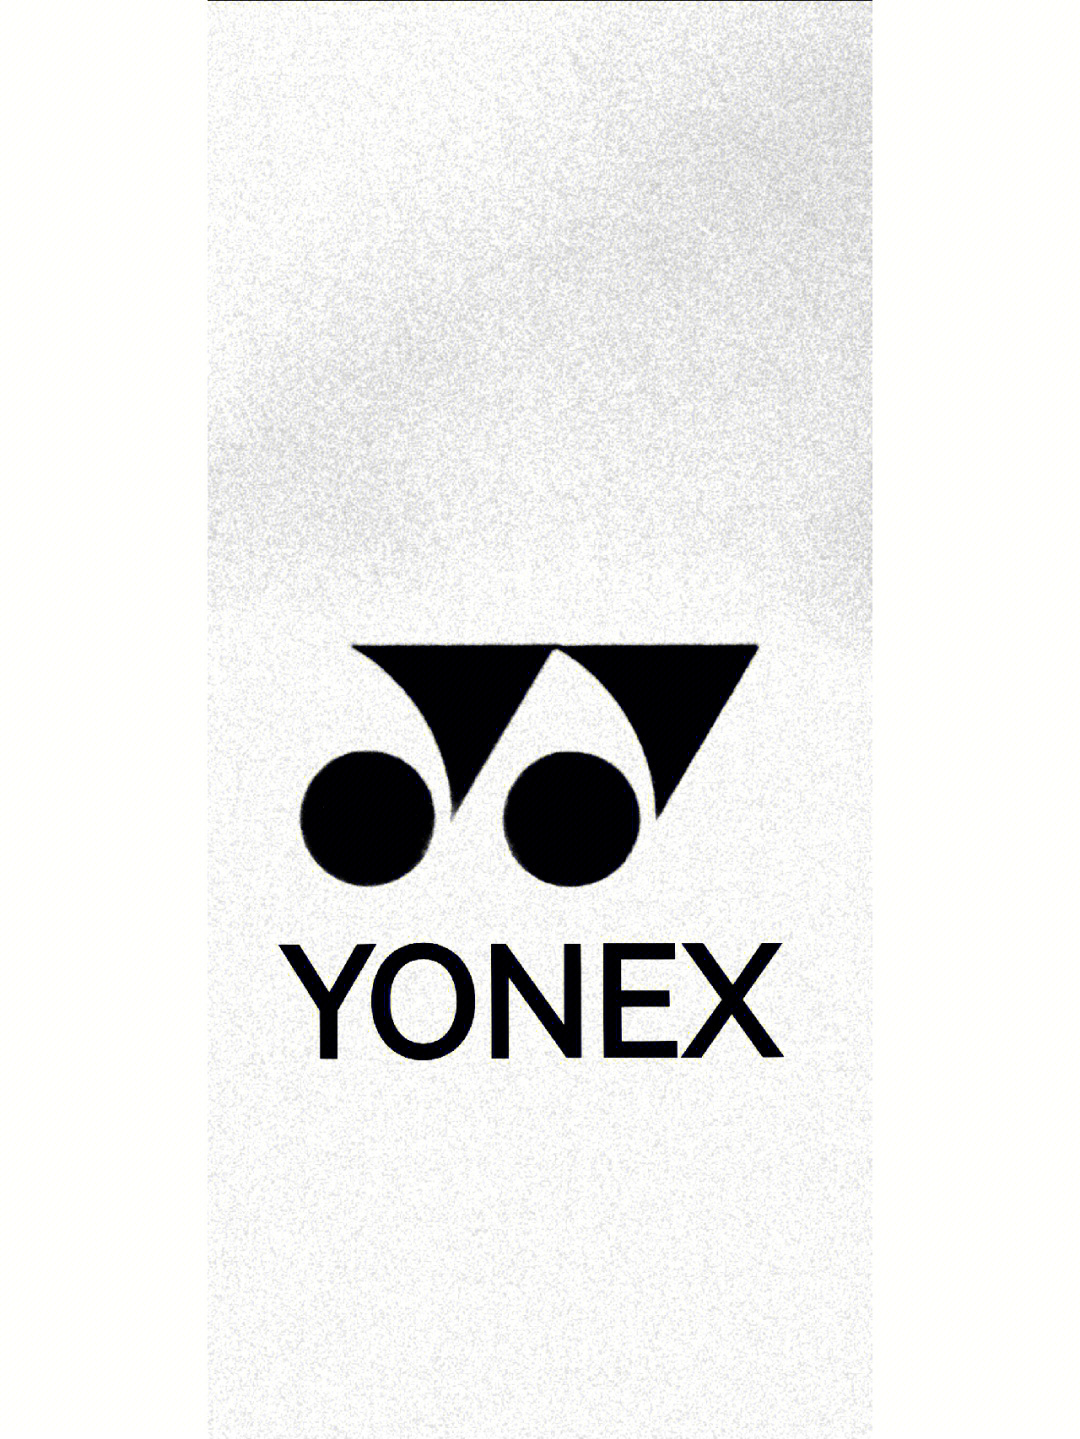 yonex手机壁纸图片